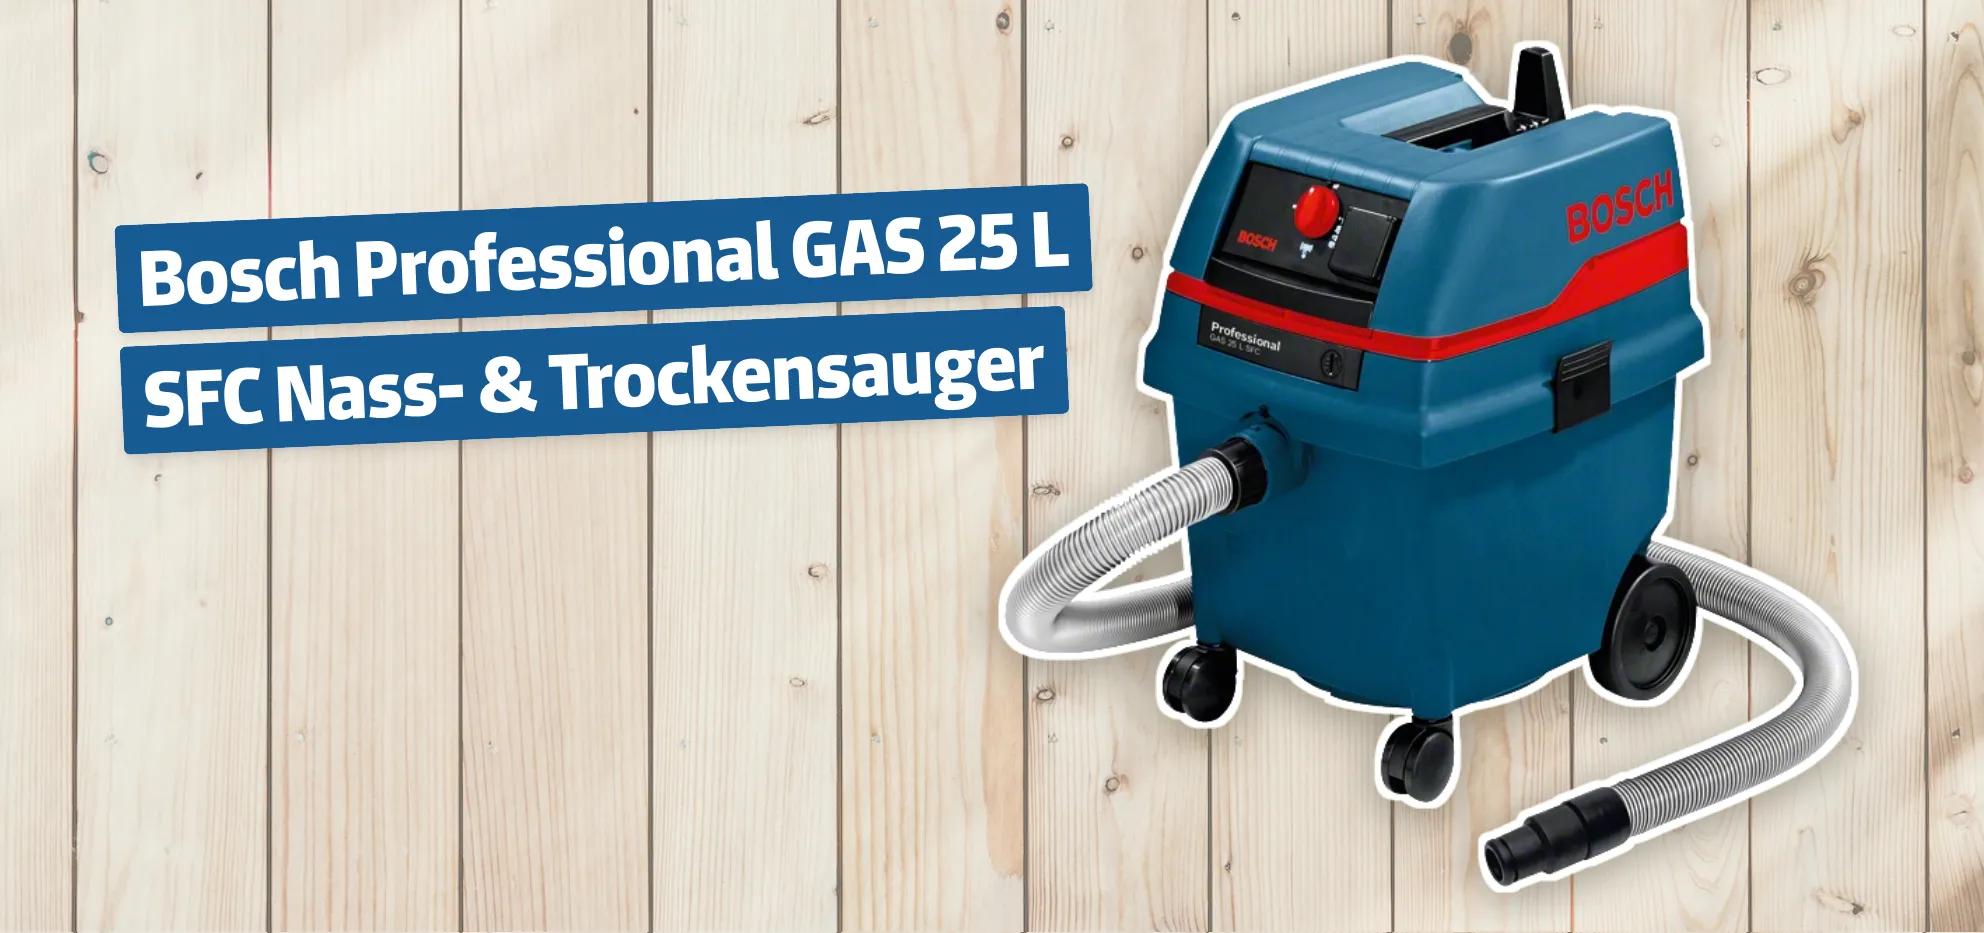 Bosch Professional GAS 25 L SFC Nass- & Trockensauger